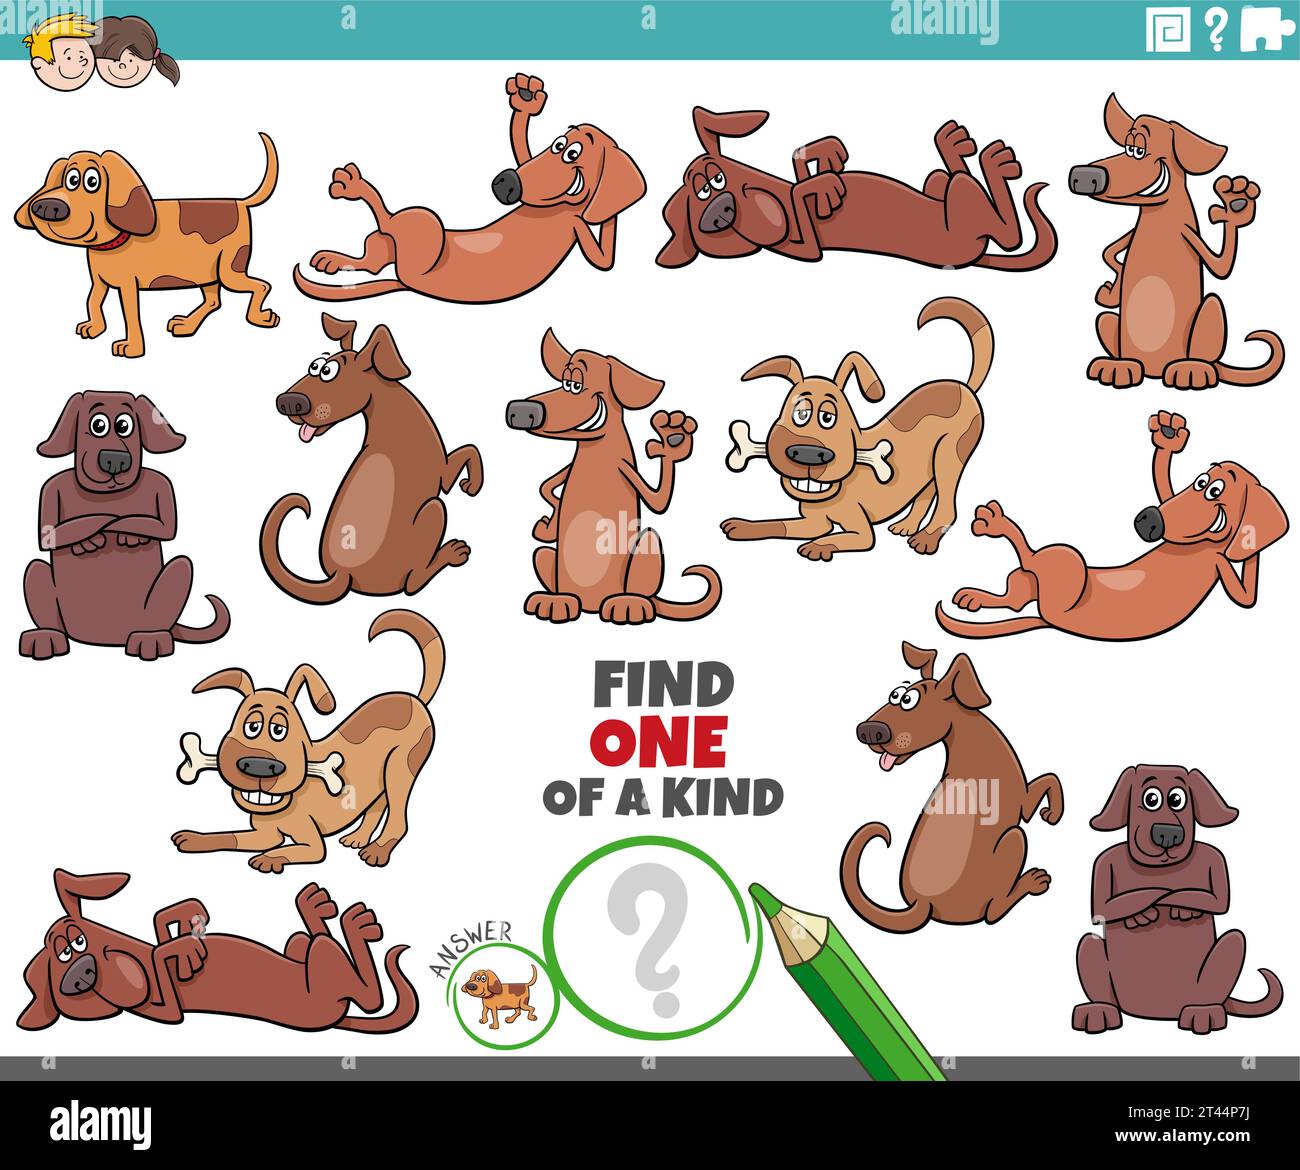 Cartoon-Illustration der Suche nach einer Art Bild pädagogische Aktivität mit Comic-Hunde Tierfiguren Stock Vektor